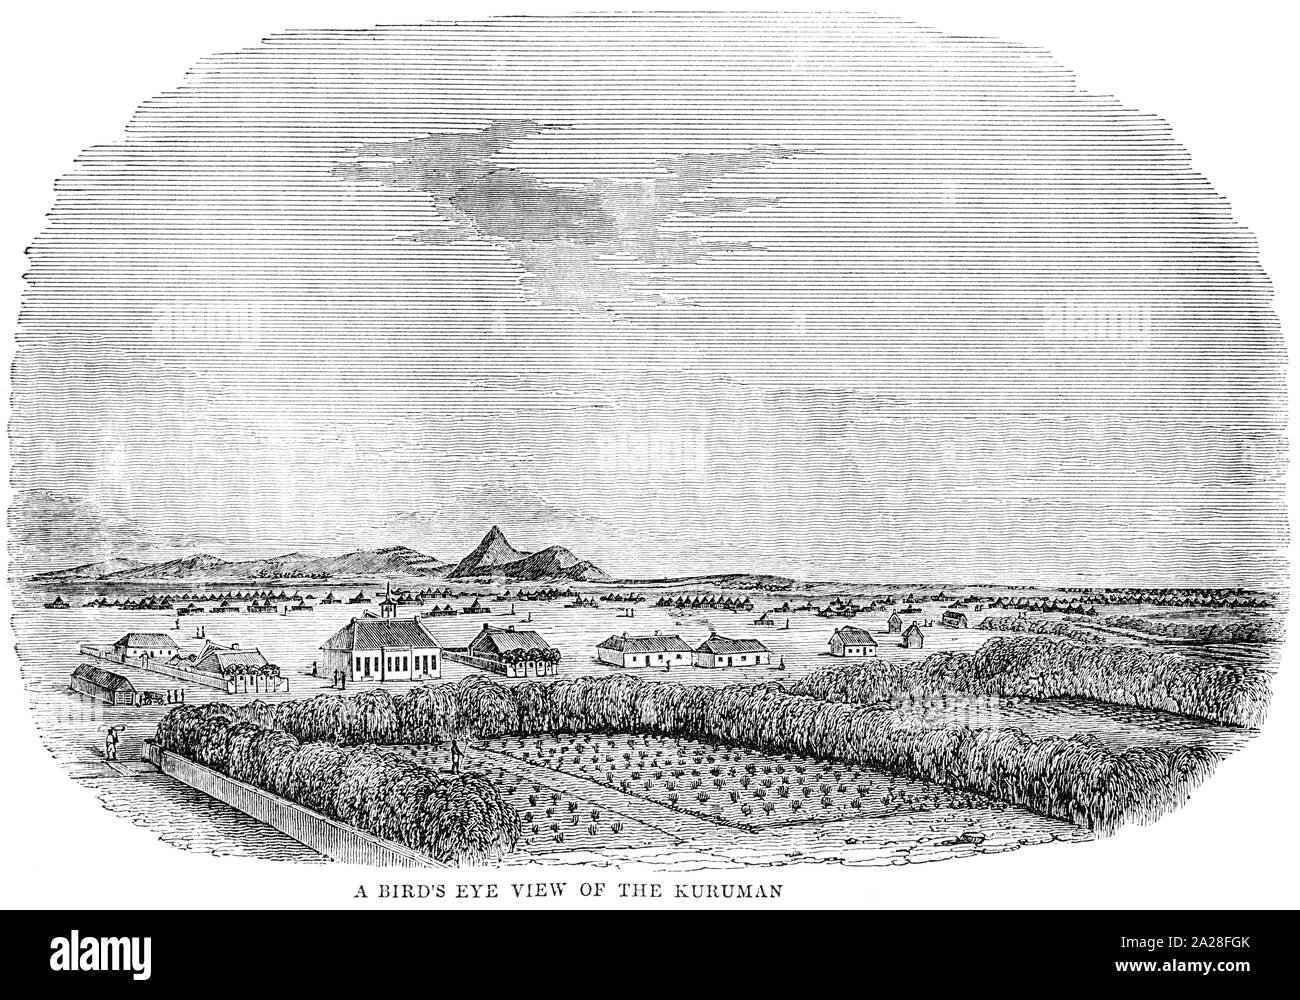 Ein Beispiel für eine Sicht aus der Vogelperspektive Kuruman in Südafrika gescannt und in hoher Auflösung aus einem Buch von Robert Moffat im Jahre 1842 gedruckt. Stockfoto